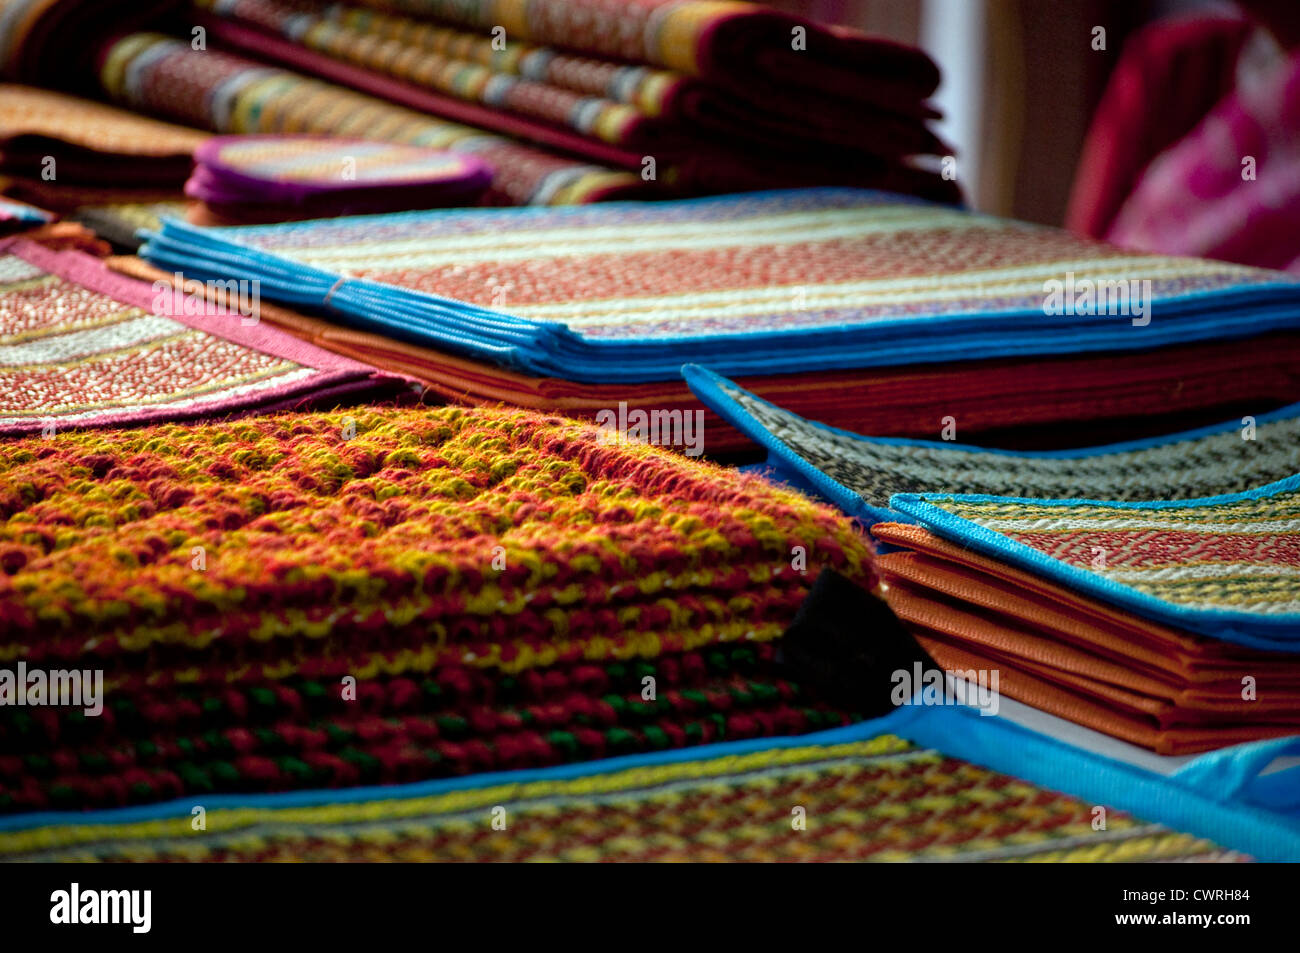 Tappeti indiani sono visualizzati in un negozio di tappeti Foto Stock